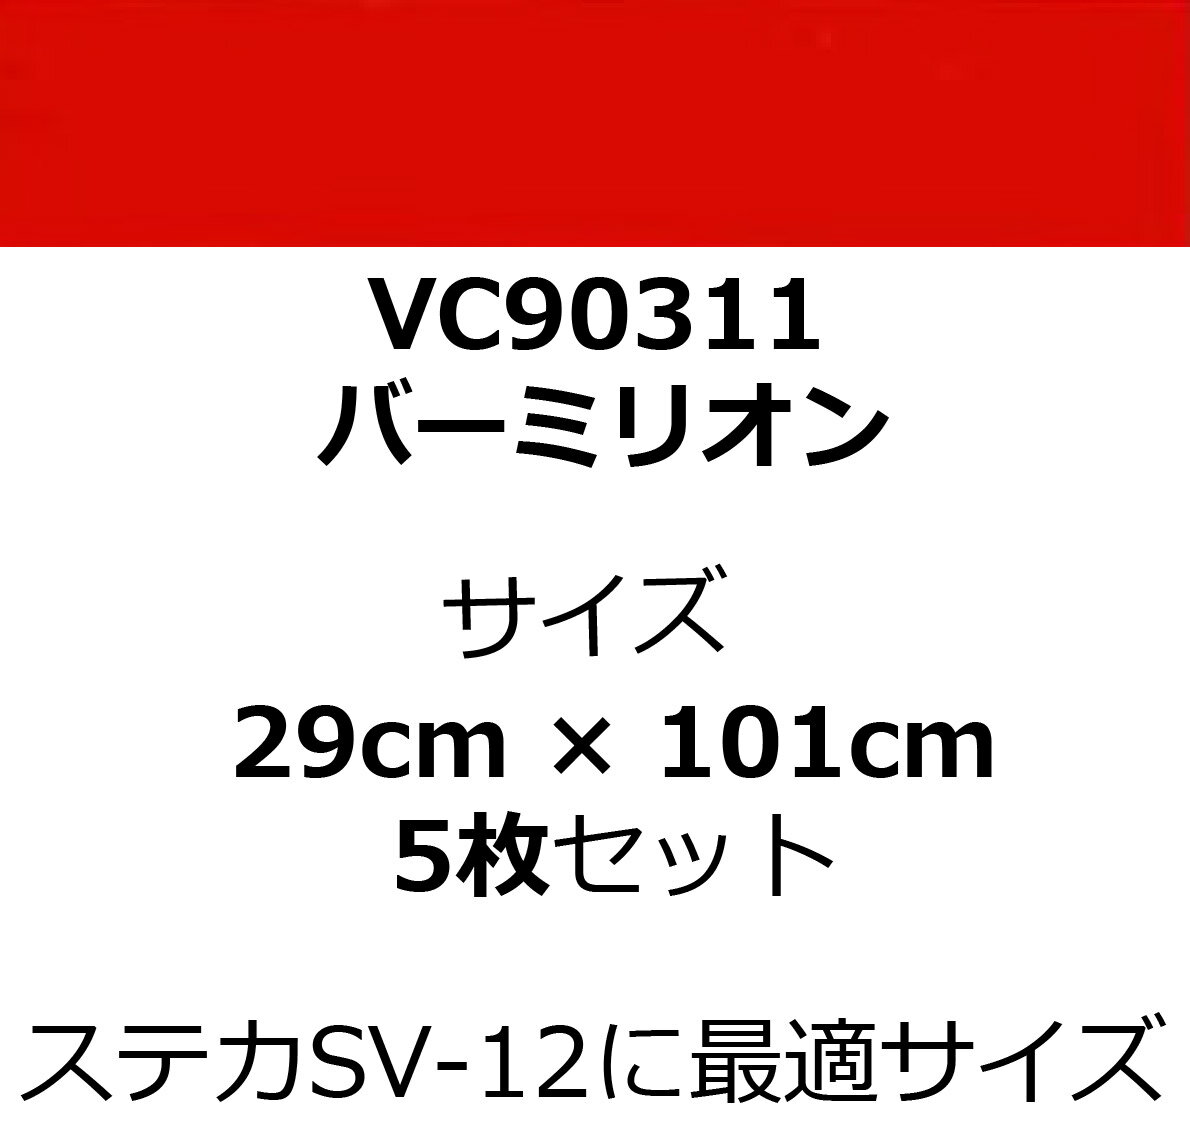 カッティングシート 赤 ステカ SV-12 利用に最適サイズ VC90311 バーミリオン 29cm 幅 x 101cm 長 Stika 5枚セット 2